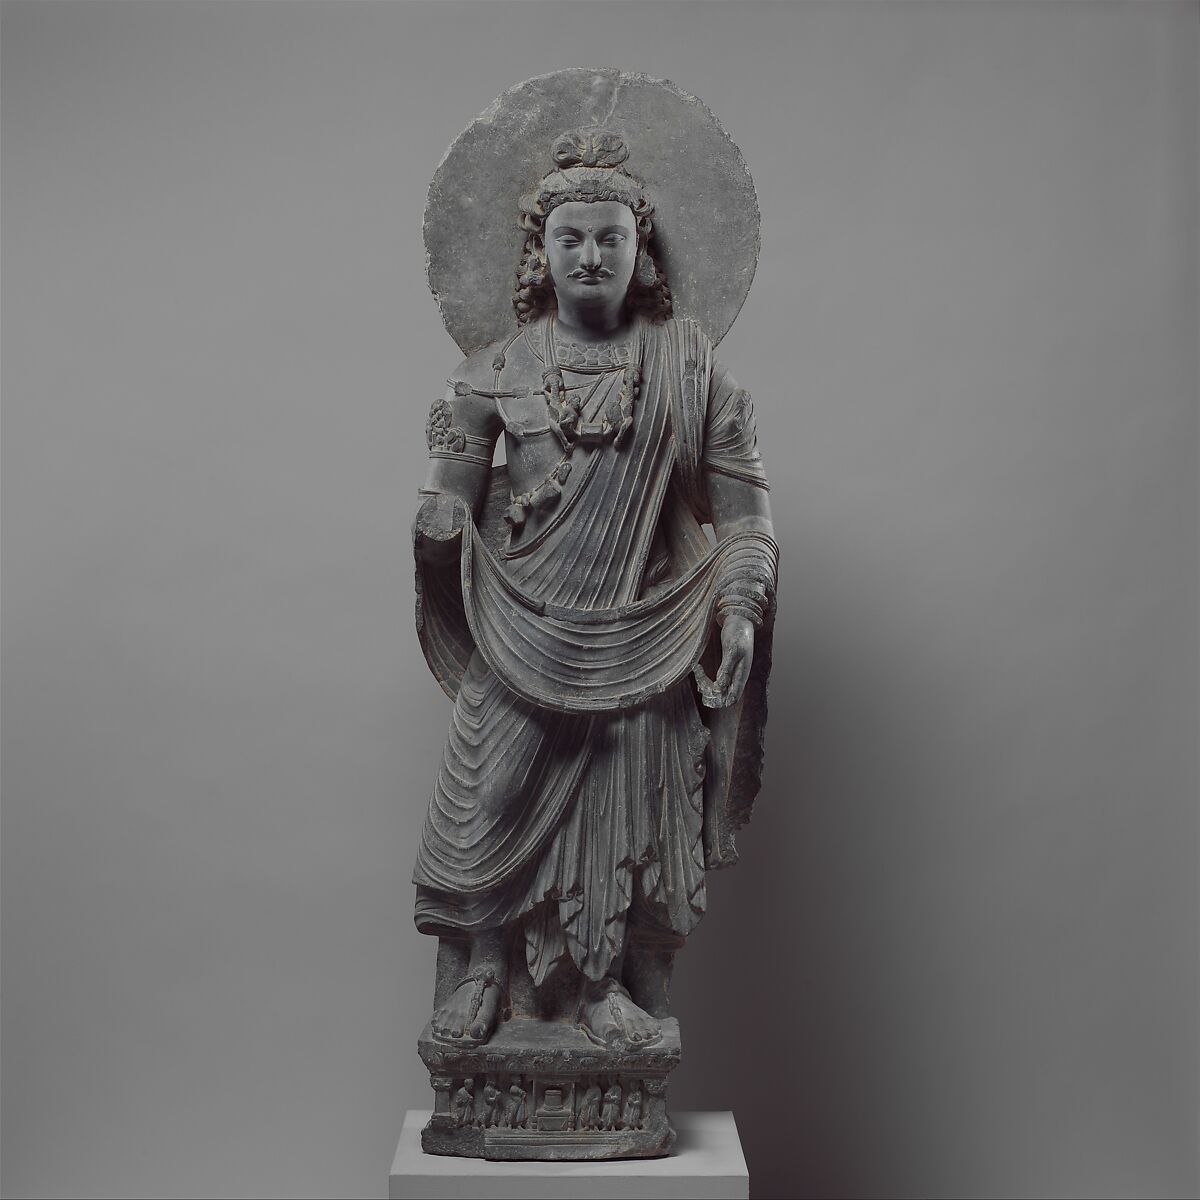 Standing Bodhisattva Maitreya (Buddha of the Future), Gray schist, Pakistan (ancient region of Gandhara) 